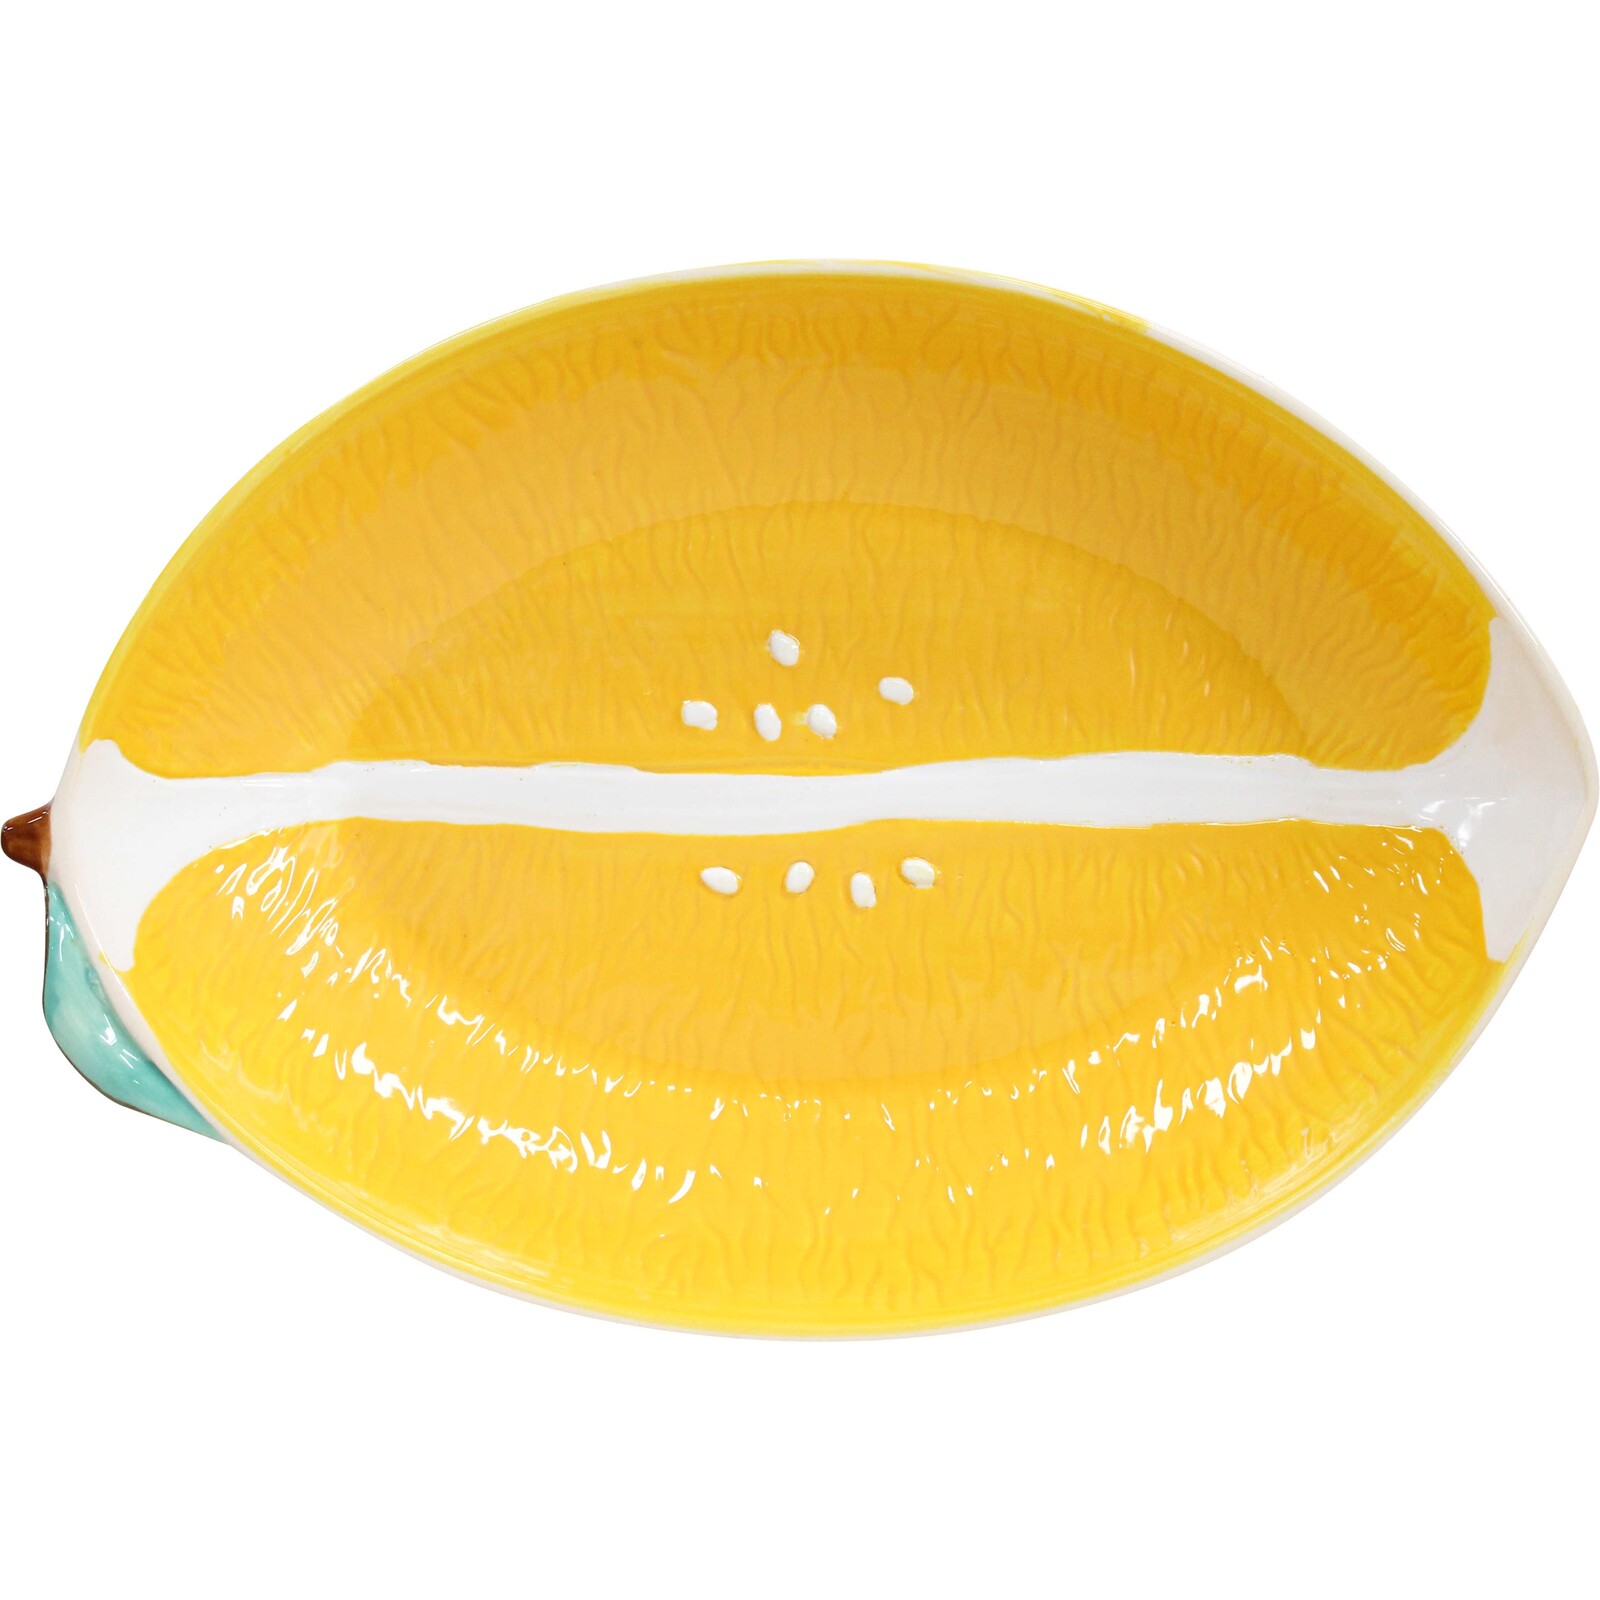 Lemon Platter